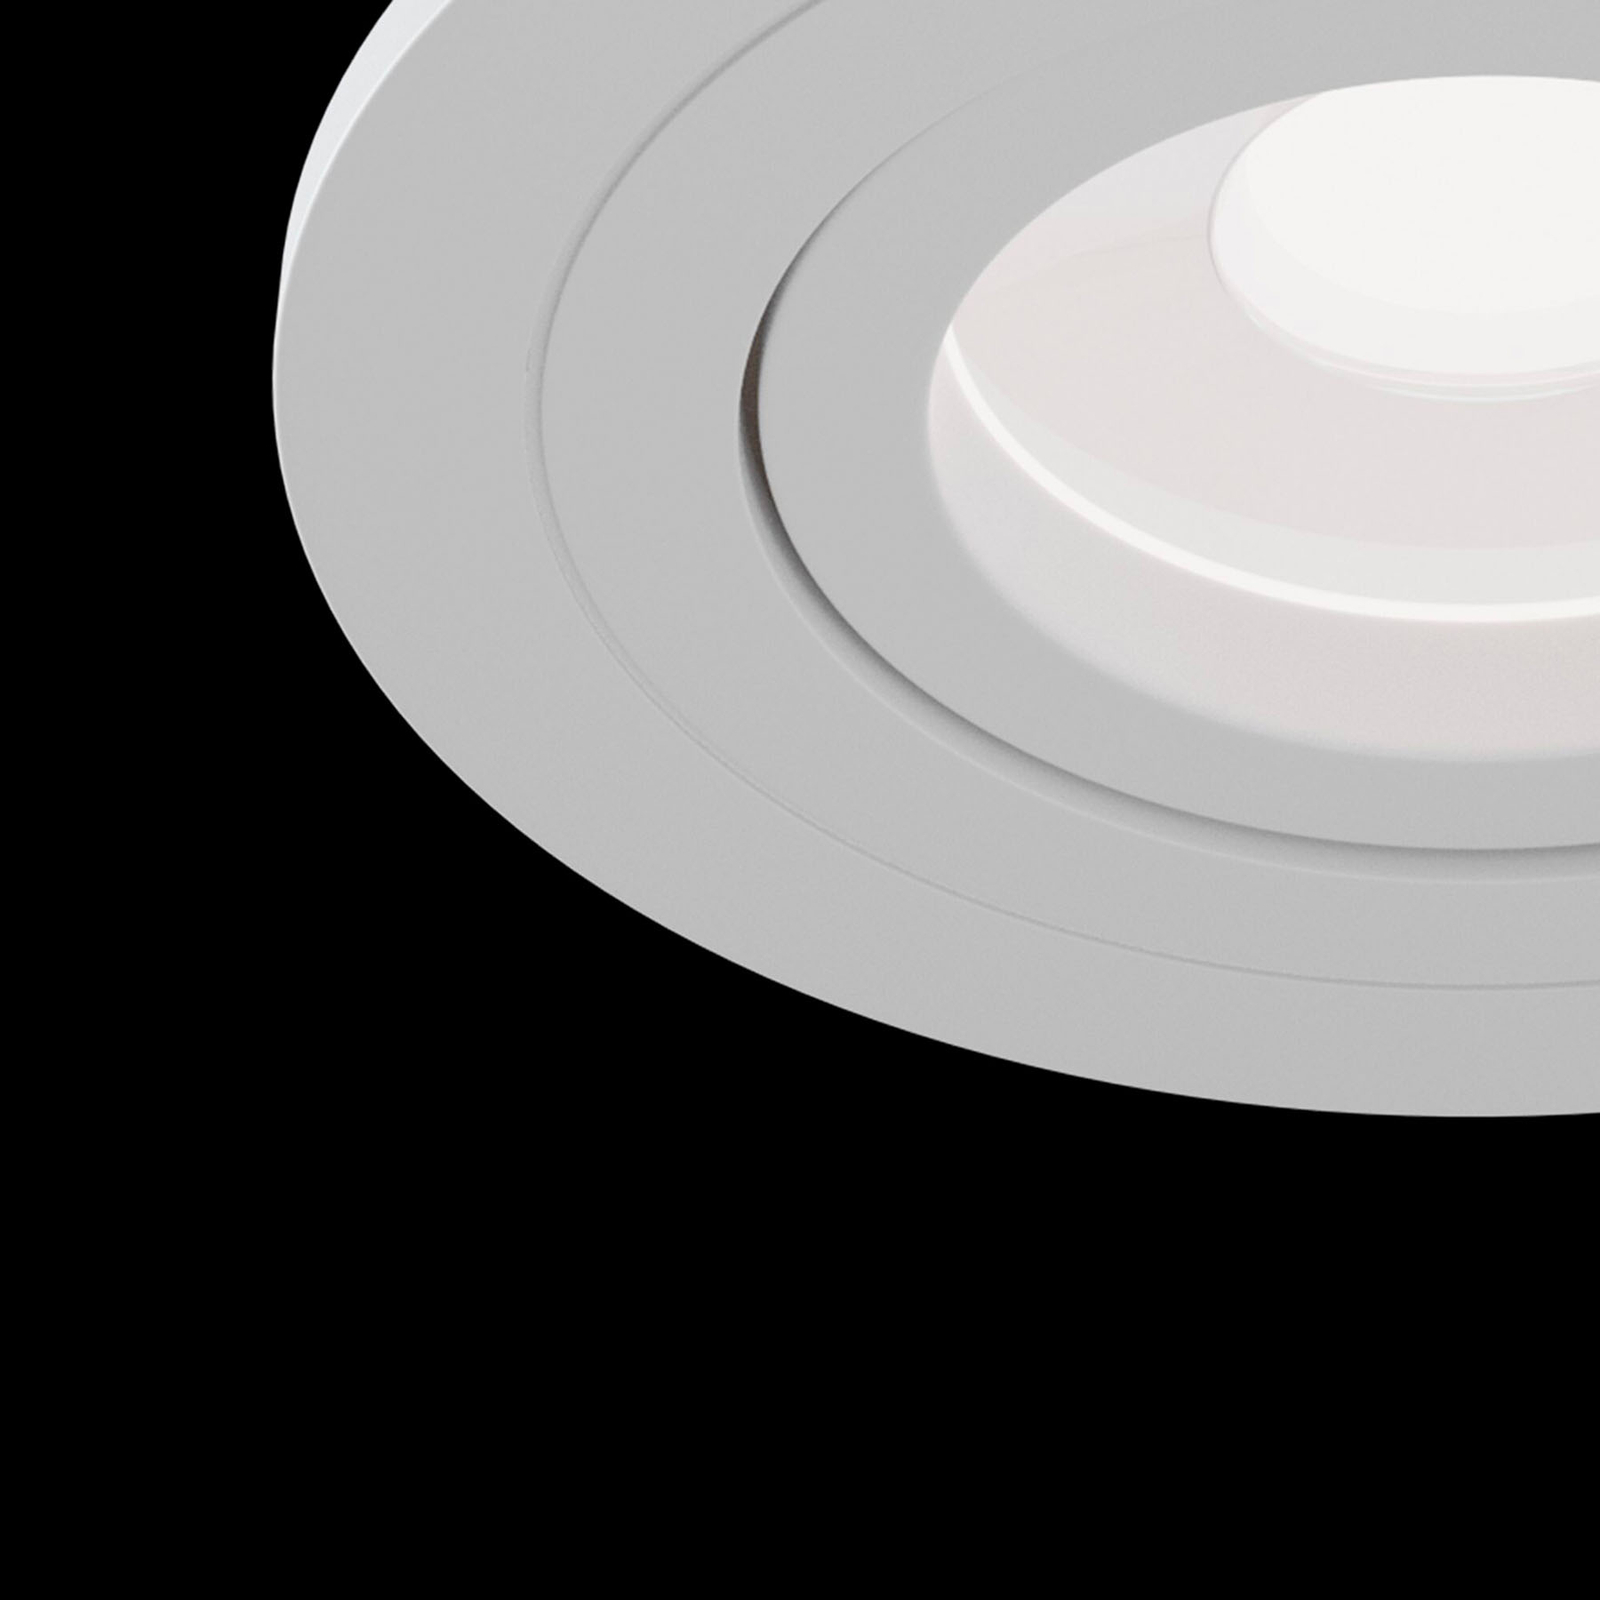 Spot encastré Atom, GU10, blanc, cadre rond